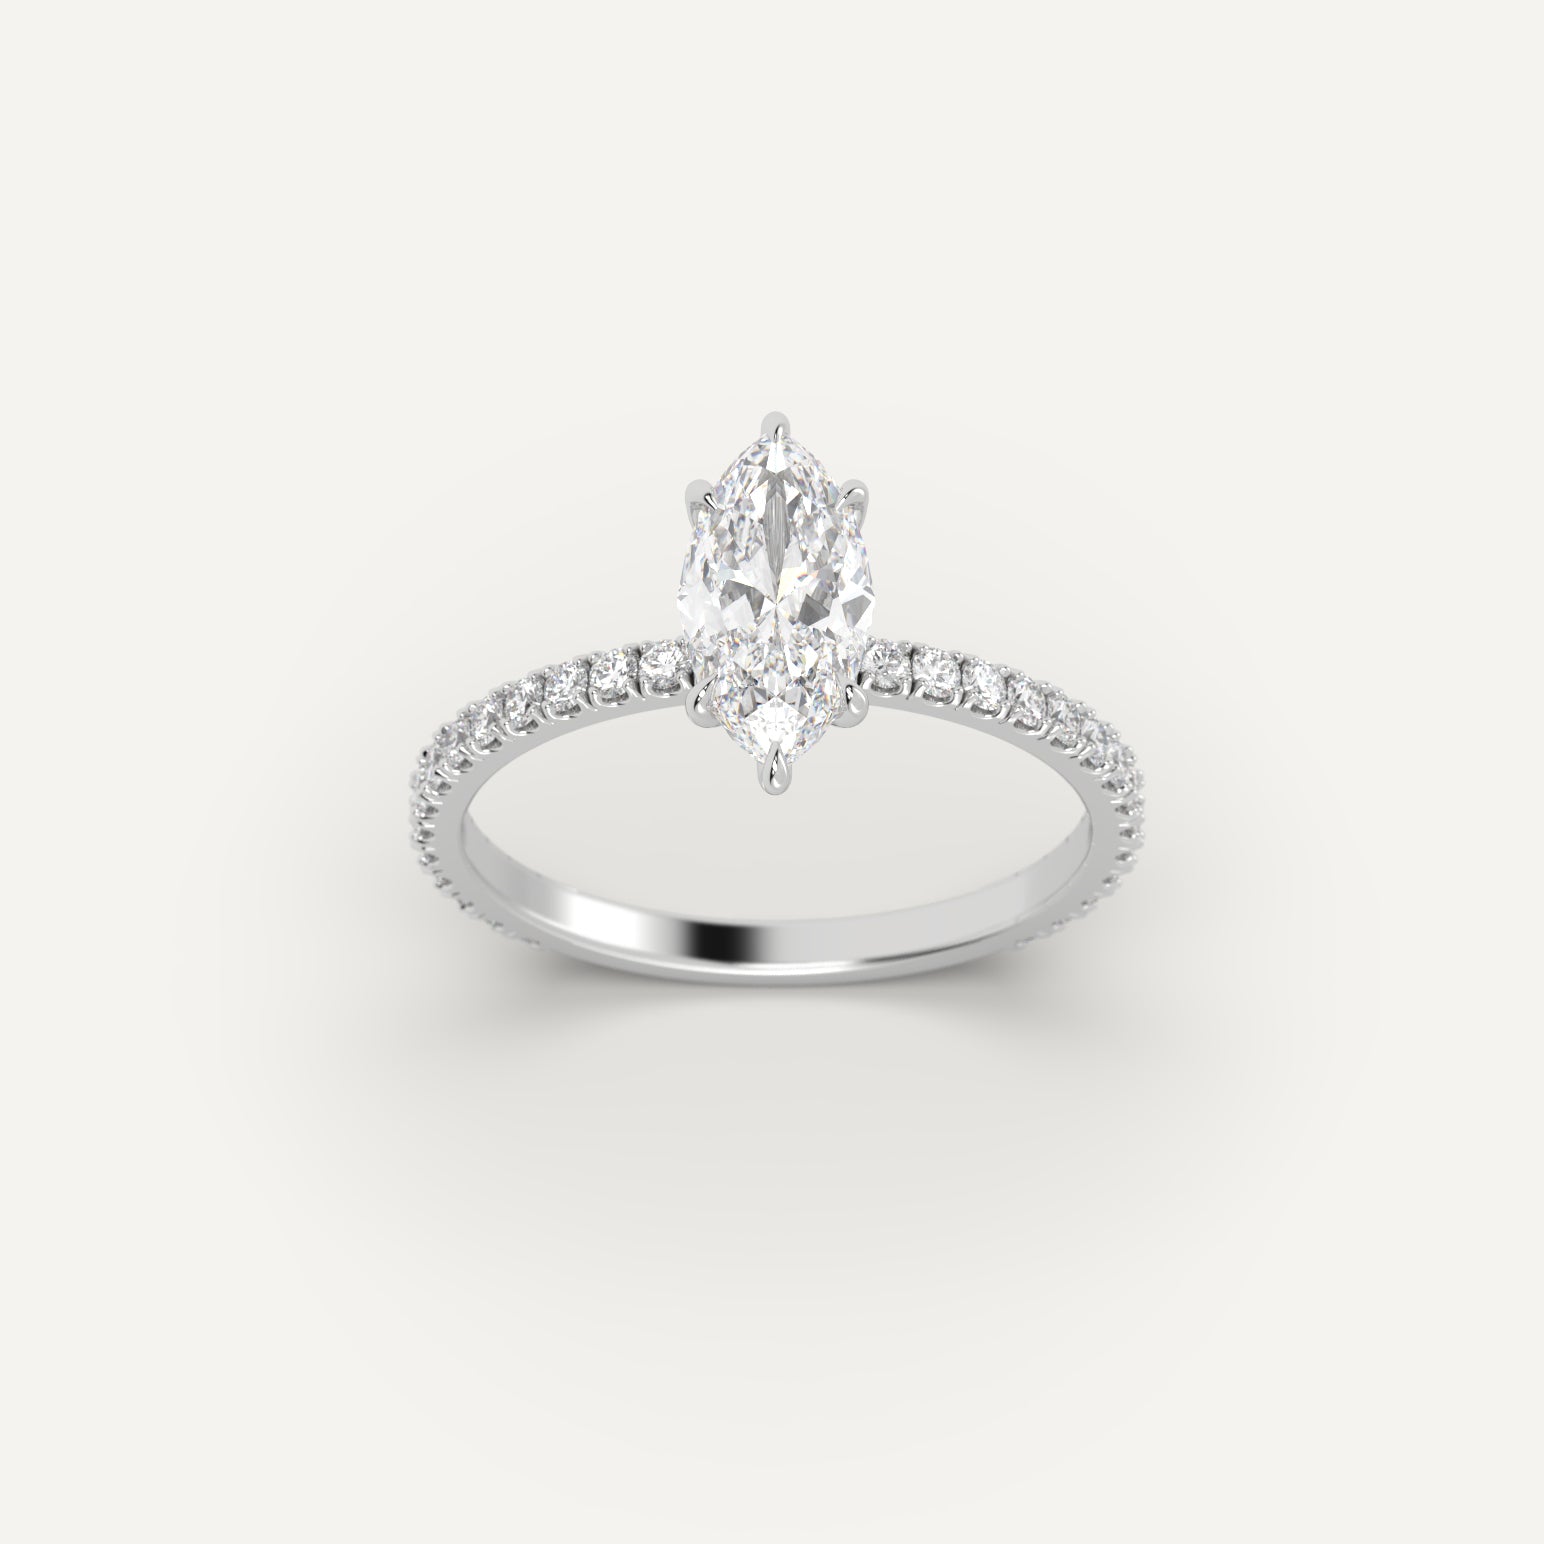 White Gold 1.2 Carat Engagement Ring